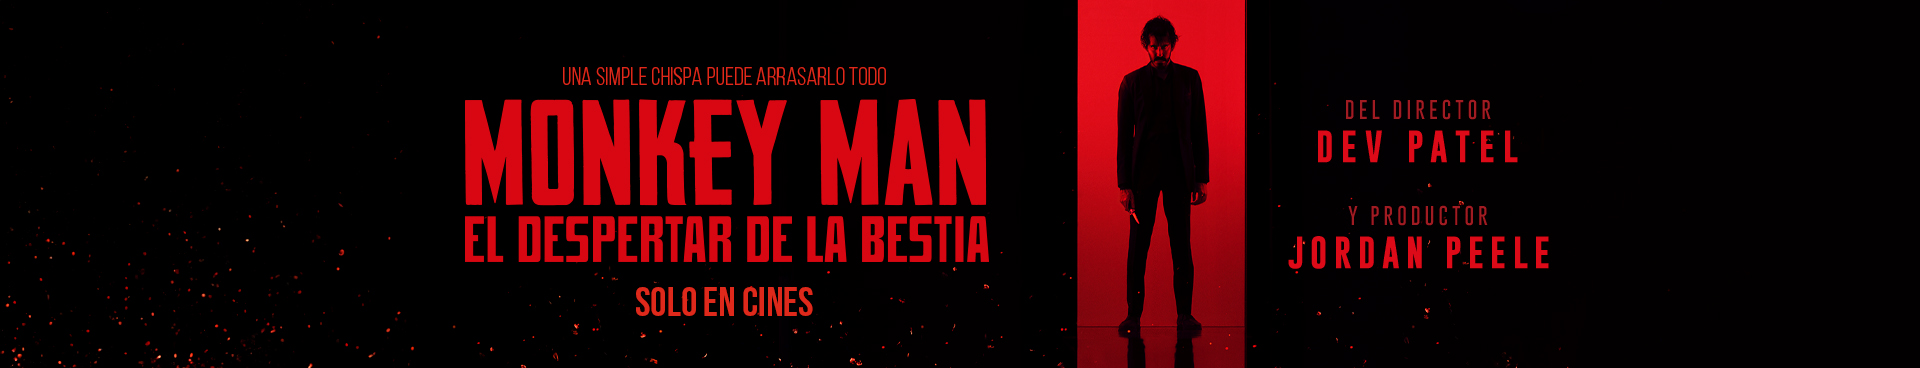 MONKEY MAN: EL DESPERTAR DE LA BESTIA